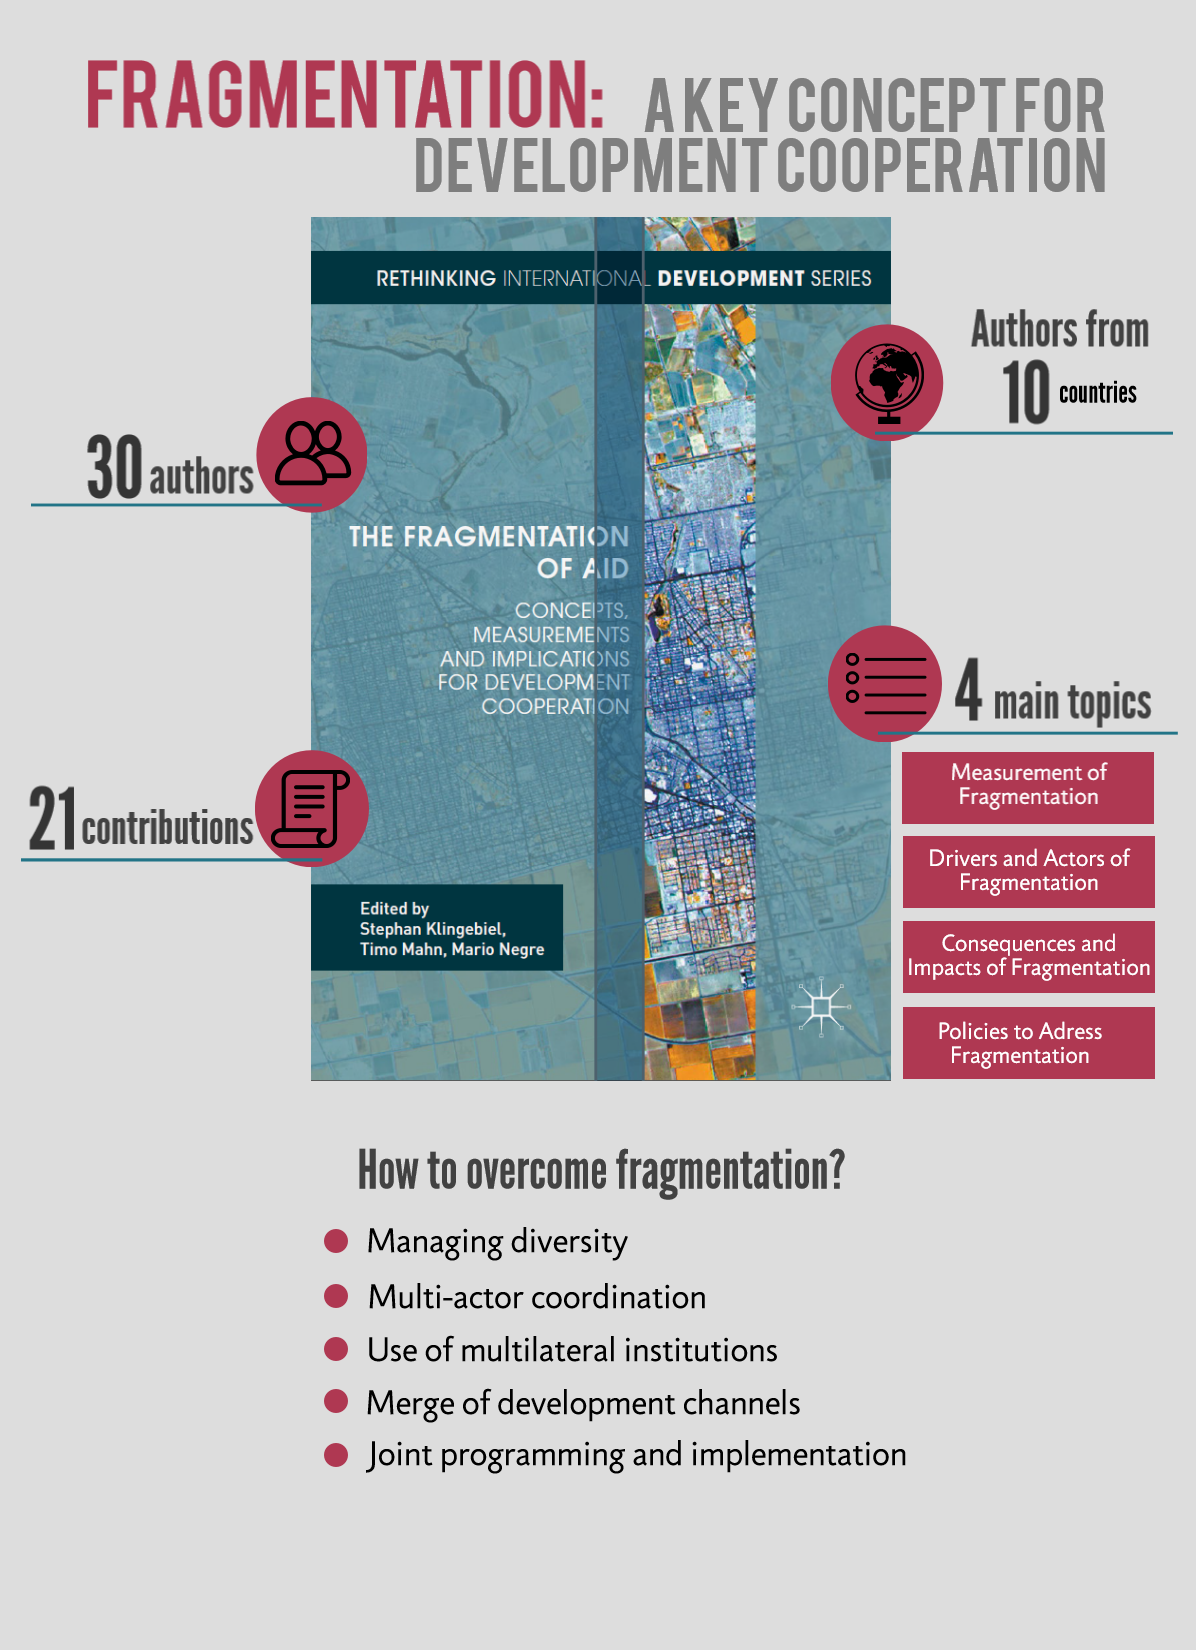 Bild: Infografik Fragmentierung der EZ